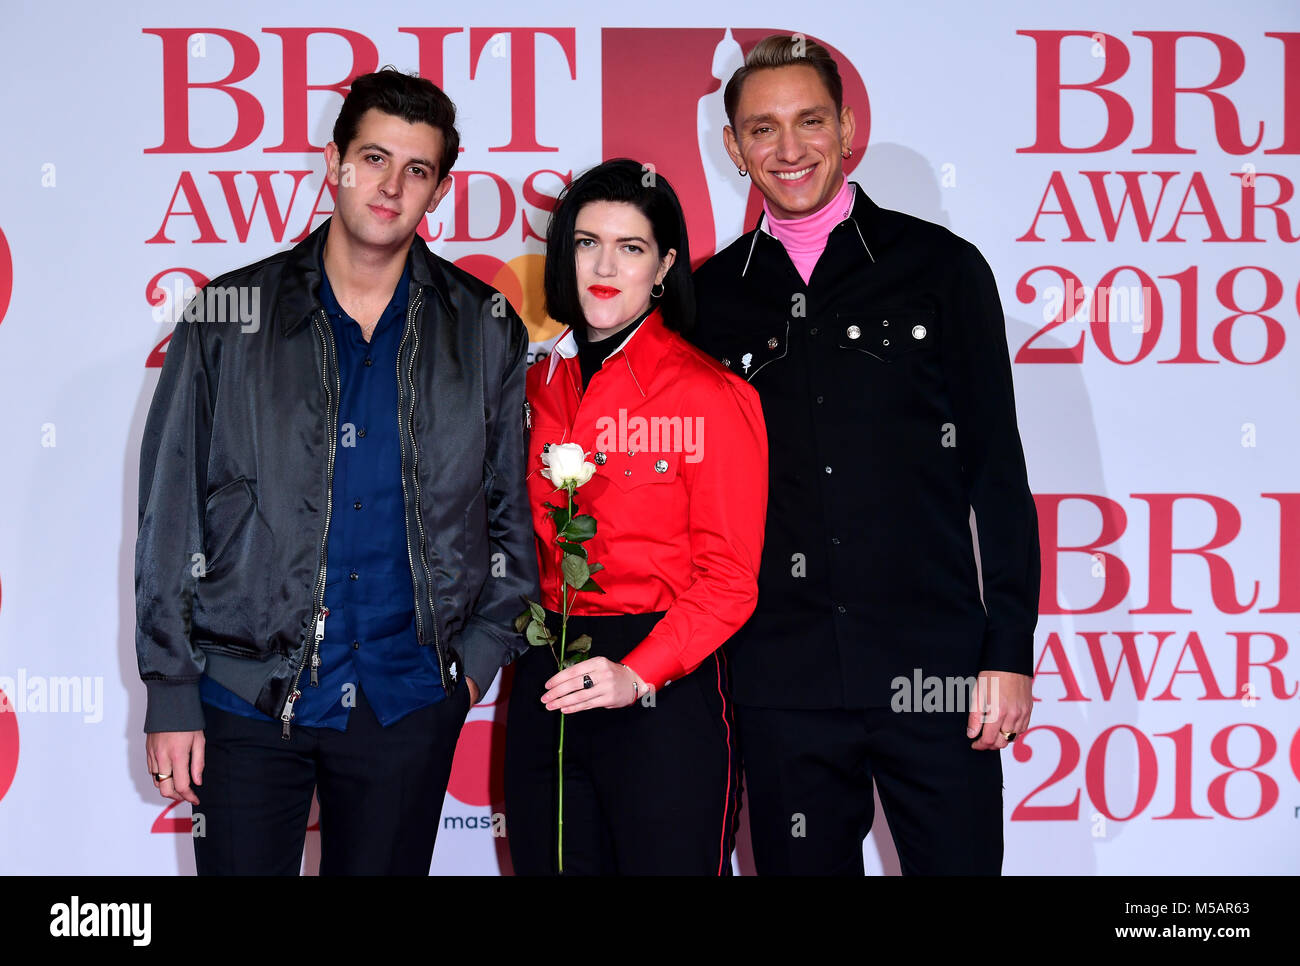 Romy Madley Croft, Oliver Sim e Jamie Smith, noto anche come Jamie xx dalla banda del xx frequentando il Brit Awards all'O2 Arena, Londra. Foto Stock